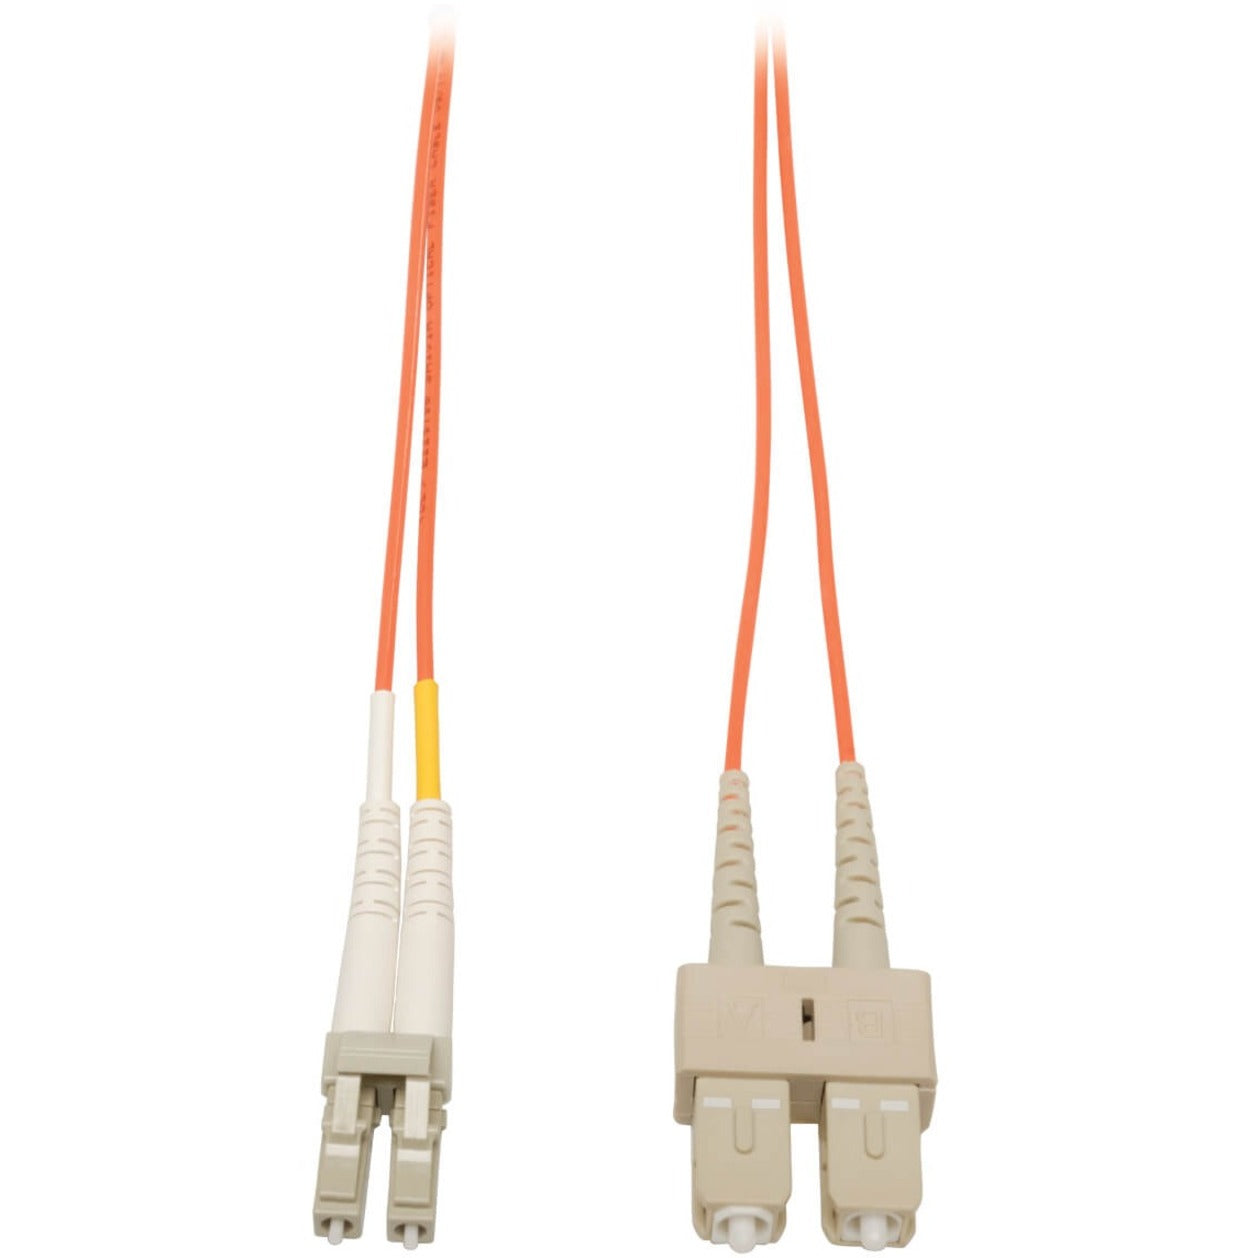 Tripp Lite N316-15M Fiber Optic Duplex Patch Cable, 49.20 ft, Orange, Lifetime Warranty